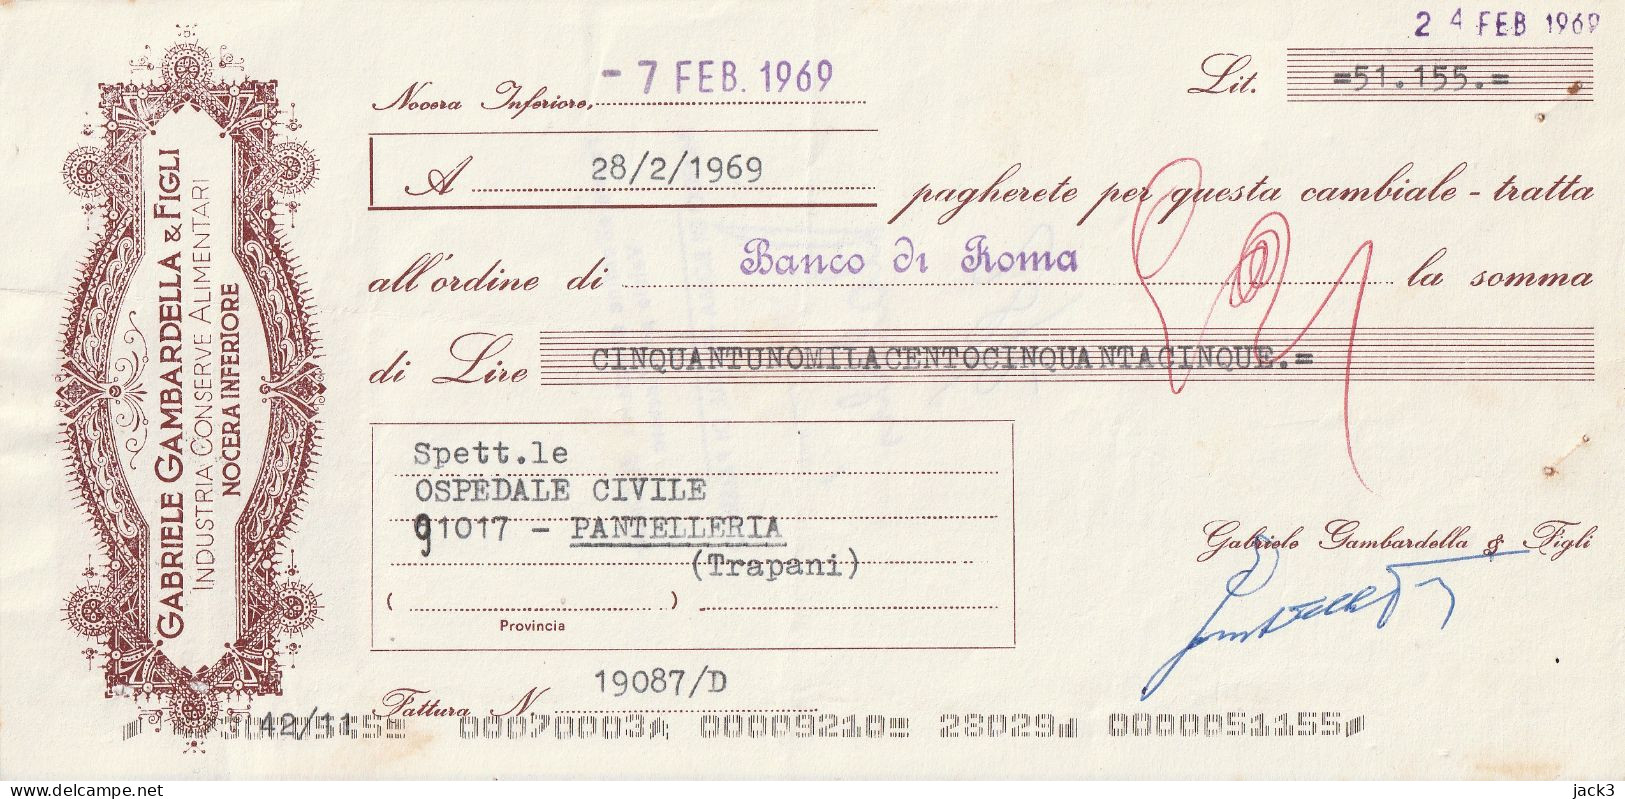 CAMBIALE - BANCO DI ROMA - CAMBIALE CON TASSELLO PUBBLICITARIO - NOCERA INFERIORE 1969 - Cheques En Traveller's Cheques